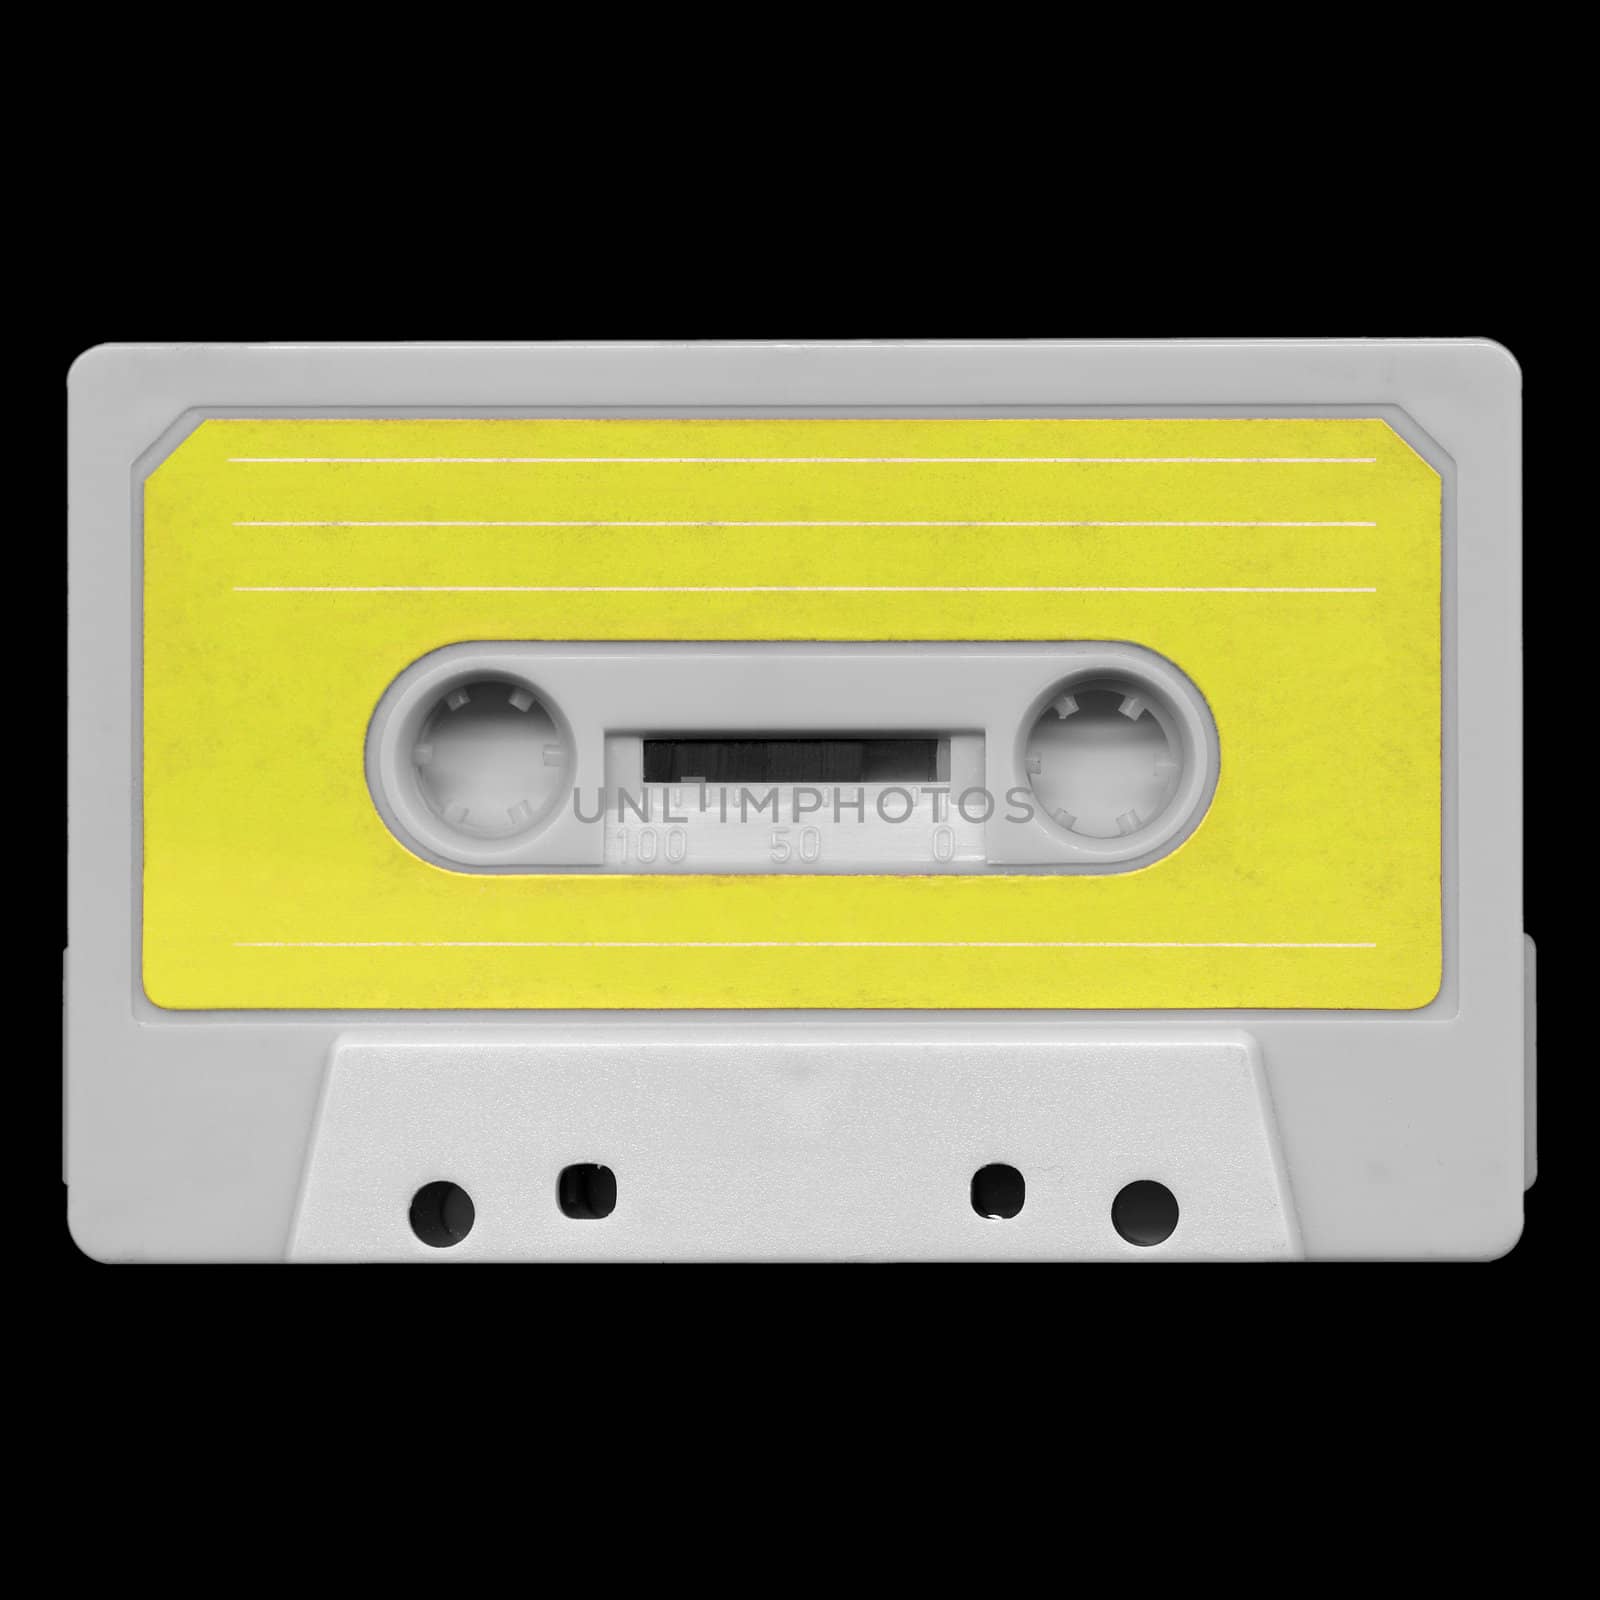 Tape cassette by claudiodivizia